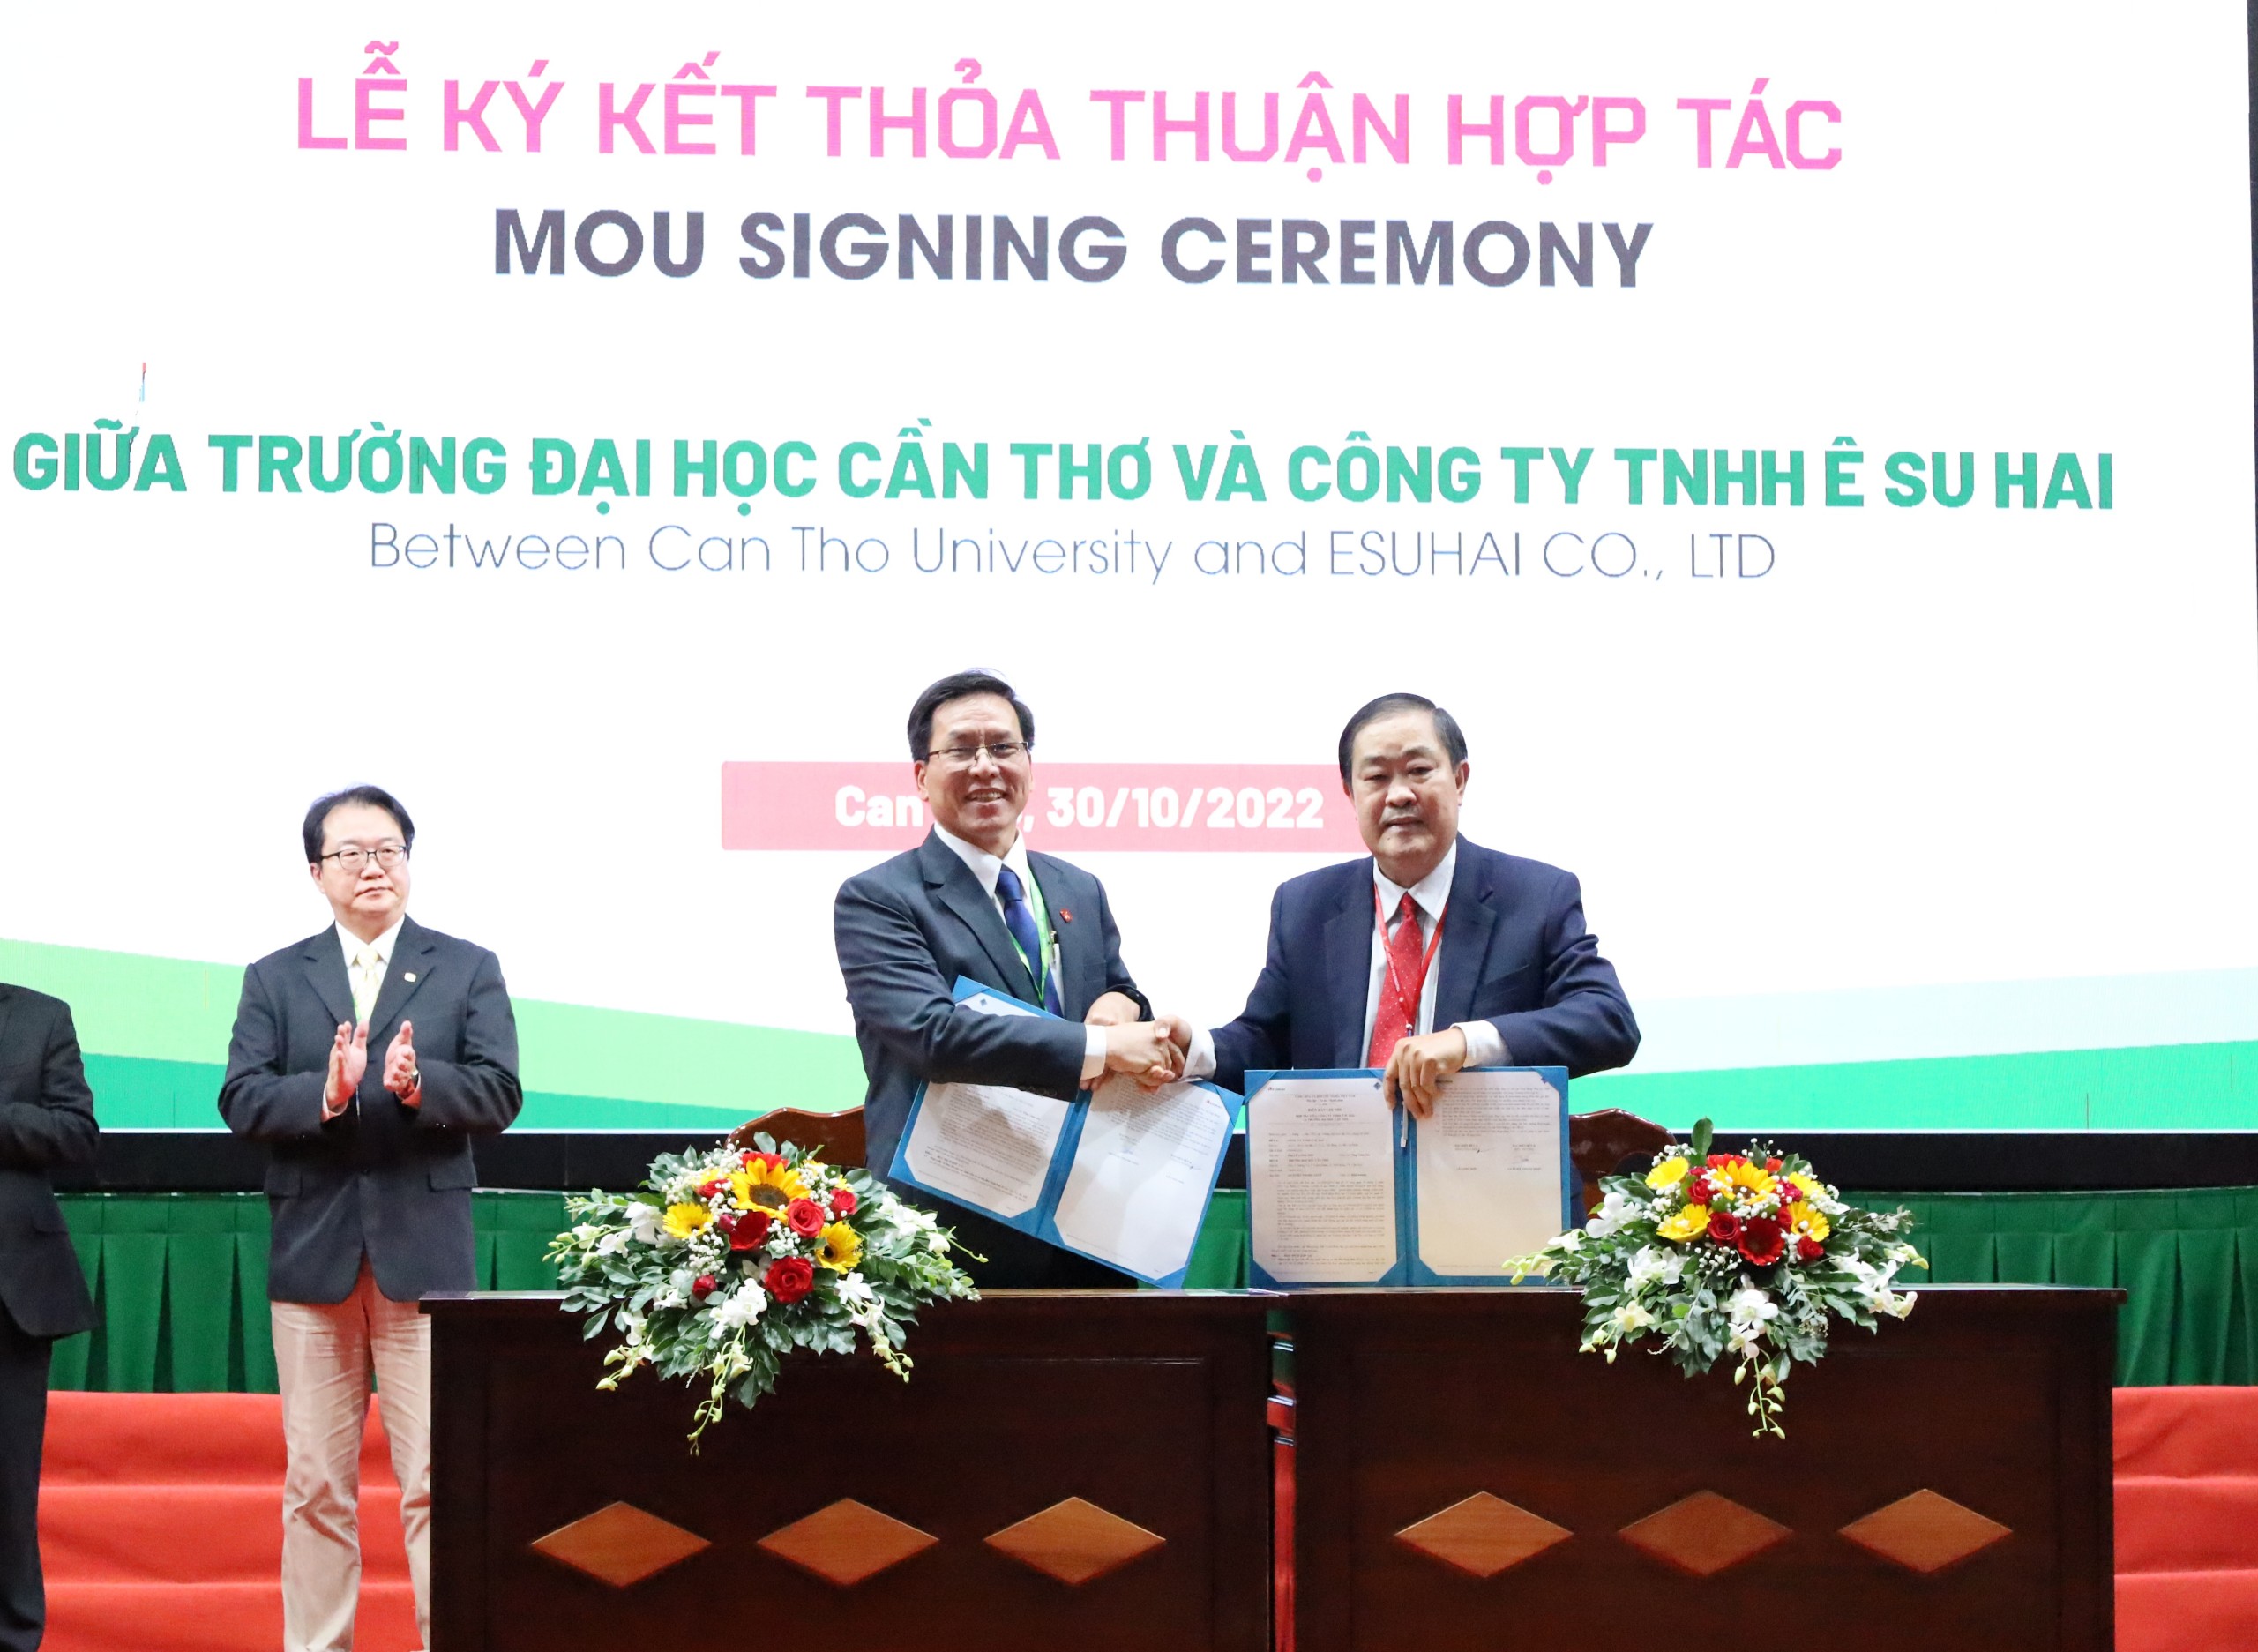 Ký kết thỏa thuận hợp tác giữa Trường Đại học Cần Thơ và Công ty TNHH Ê Su Hai.